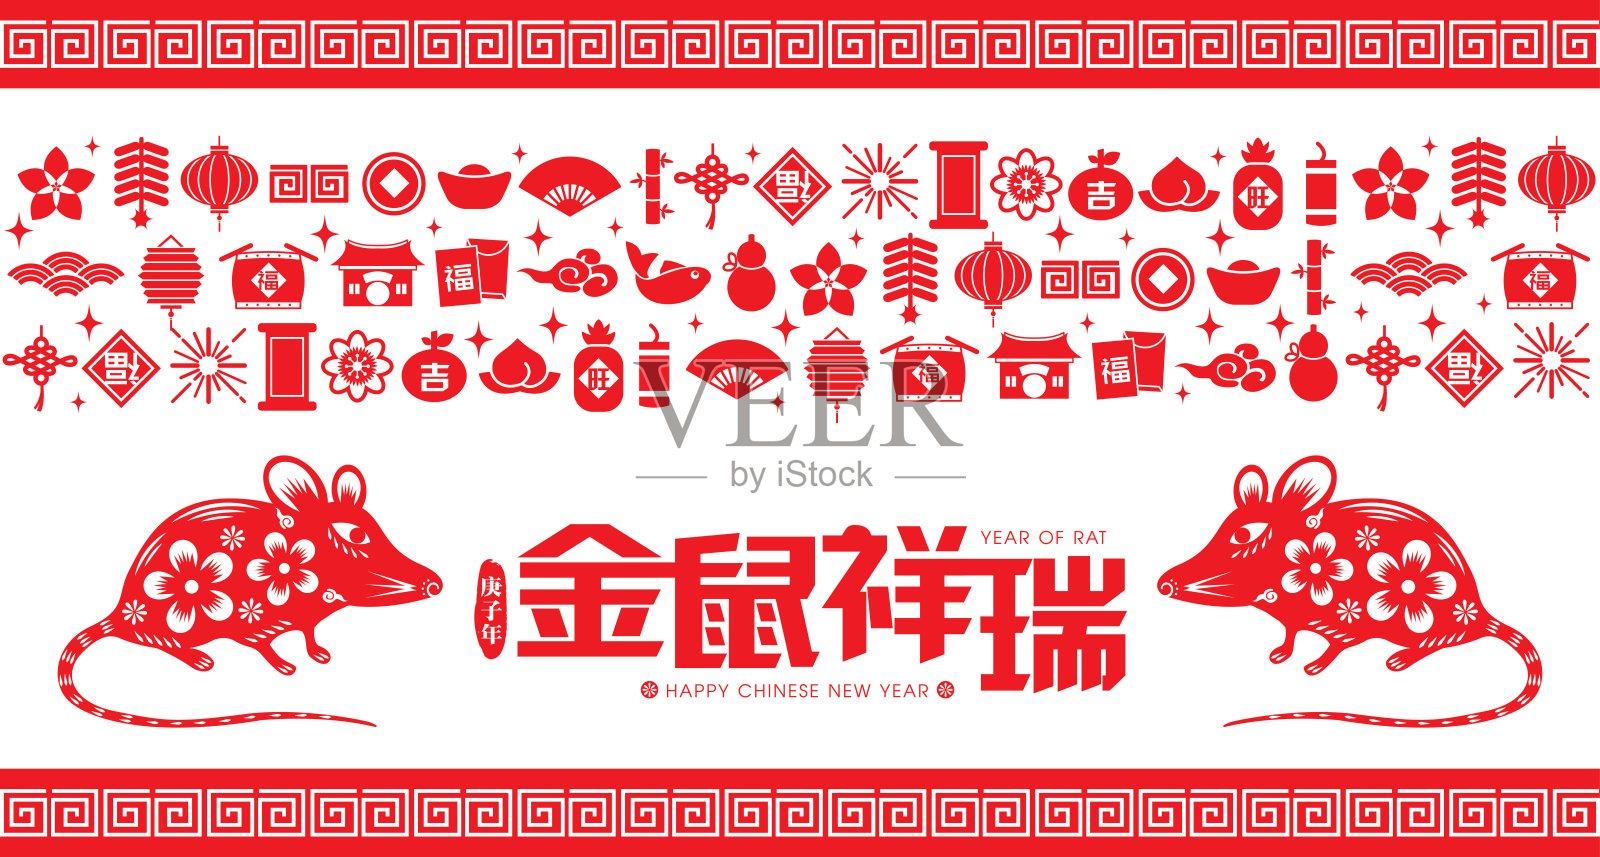 2020年中国新年剪纸鼠年矢量插画(中文翻译:鼠年吉祥)设计模板素材